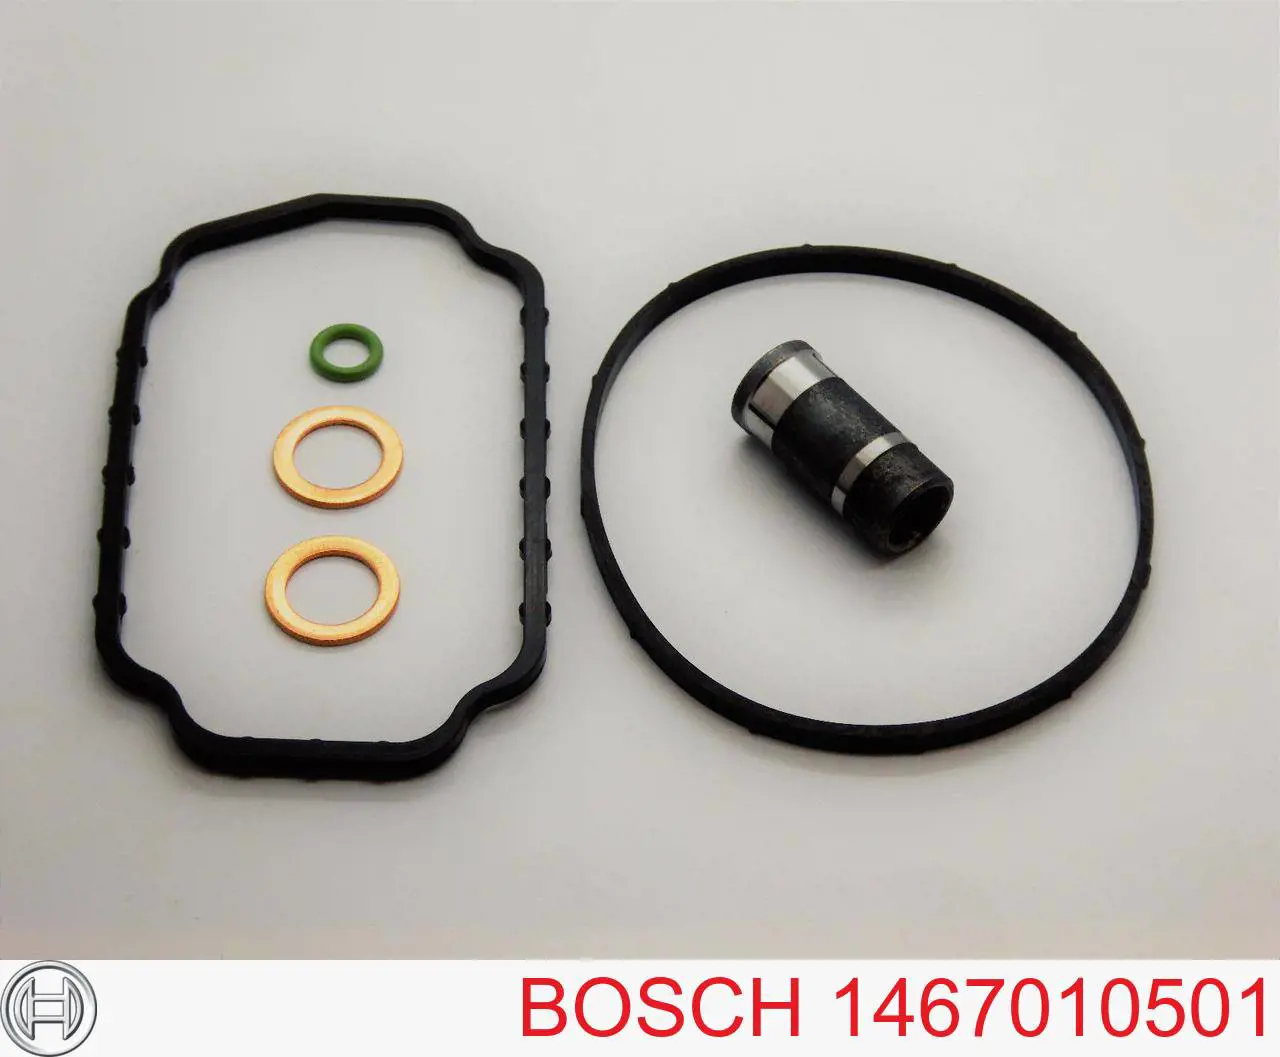 1467010501 Bosch kit de reparación, bomba de alta presión